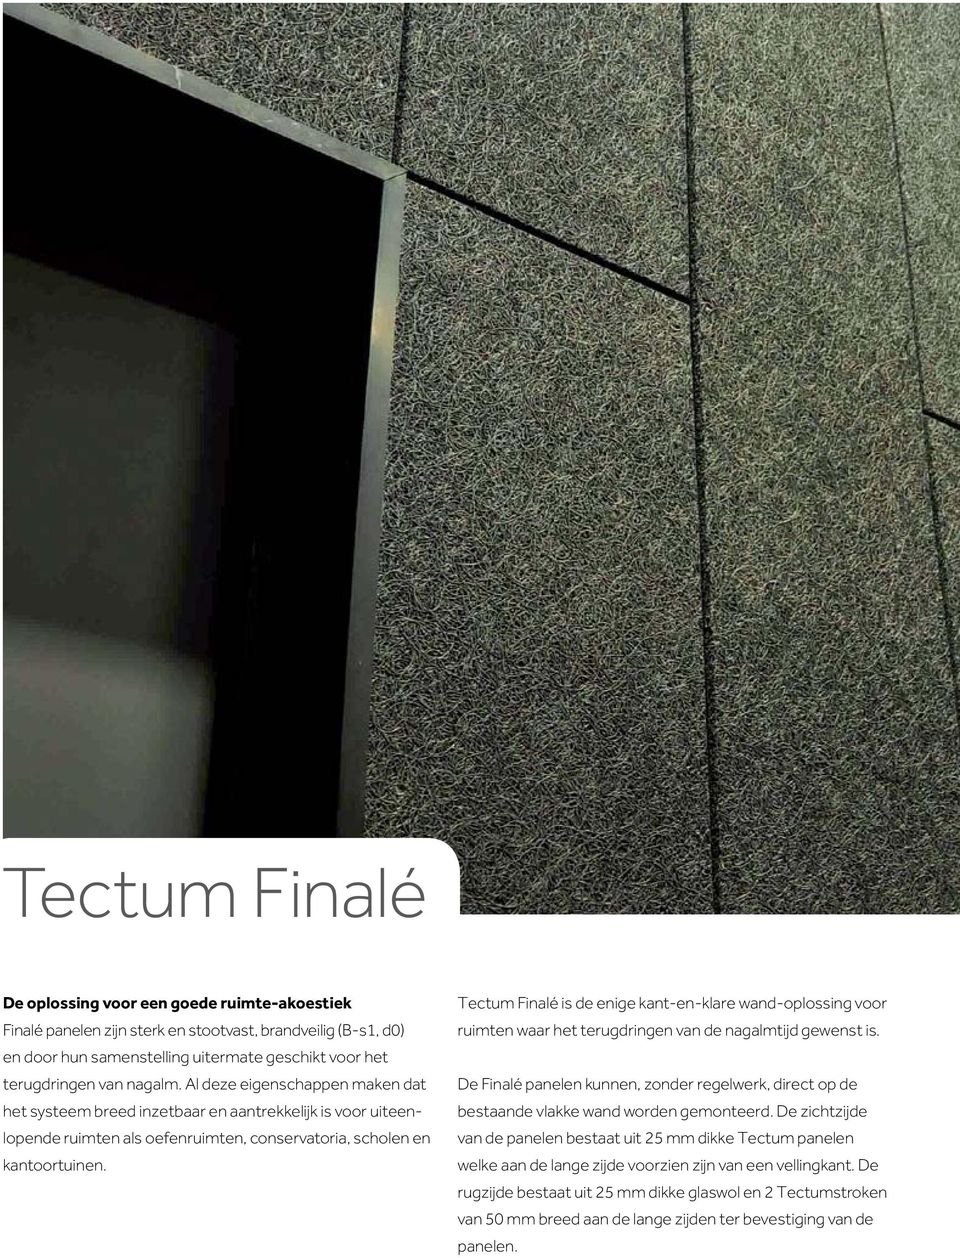 Tectum Finalé is de enige kant-en-klare wand-oplossing voor ruimten waar het terugdringen van de nagalmtijd gewenst is.